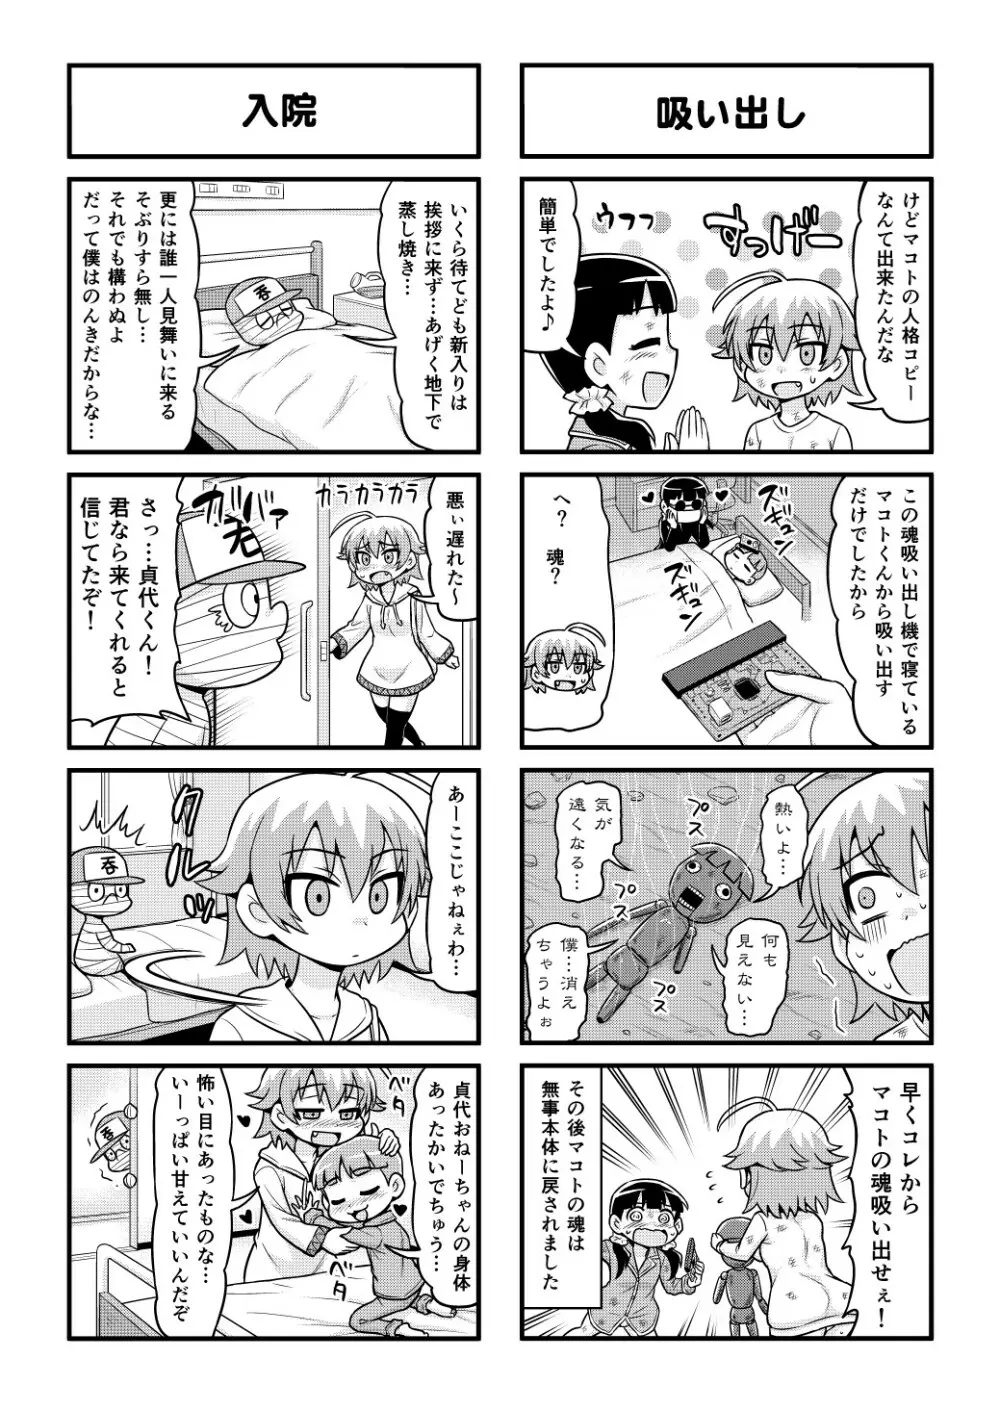 のんきBOY 1-48 - page380